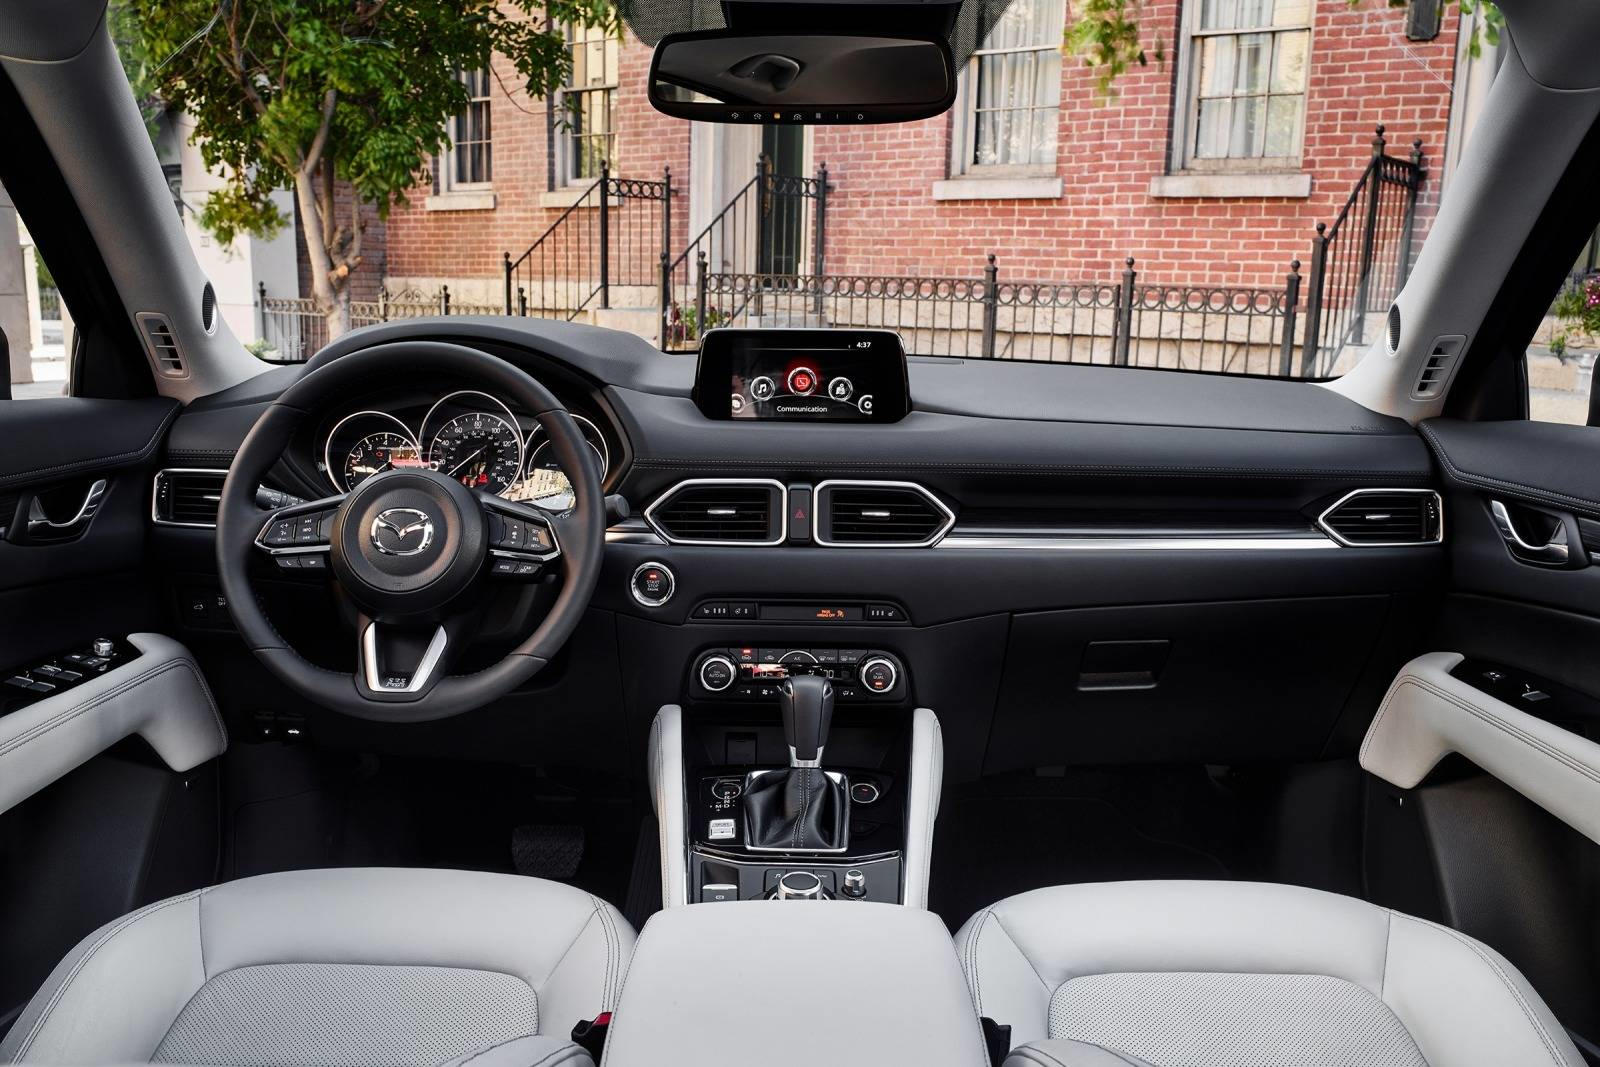 2018 Mazda CX-5 Interior Photos | CarBuzz